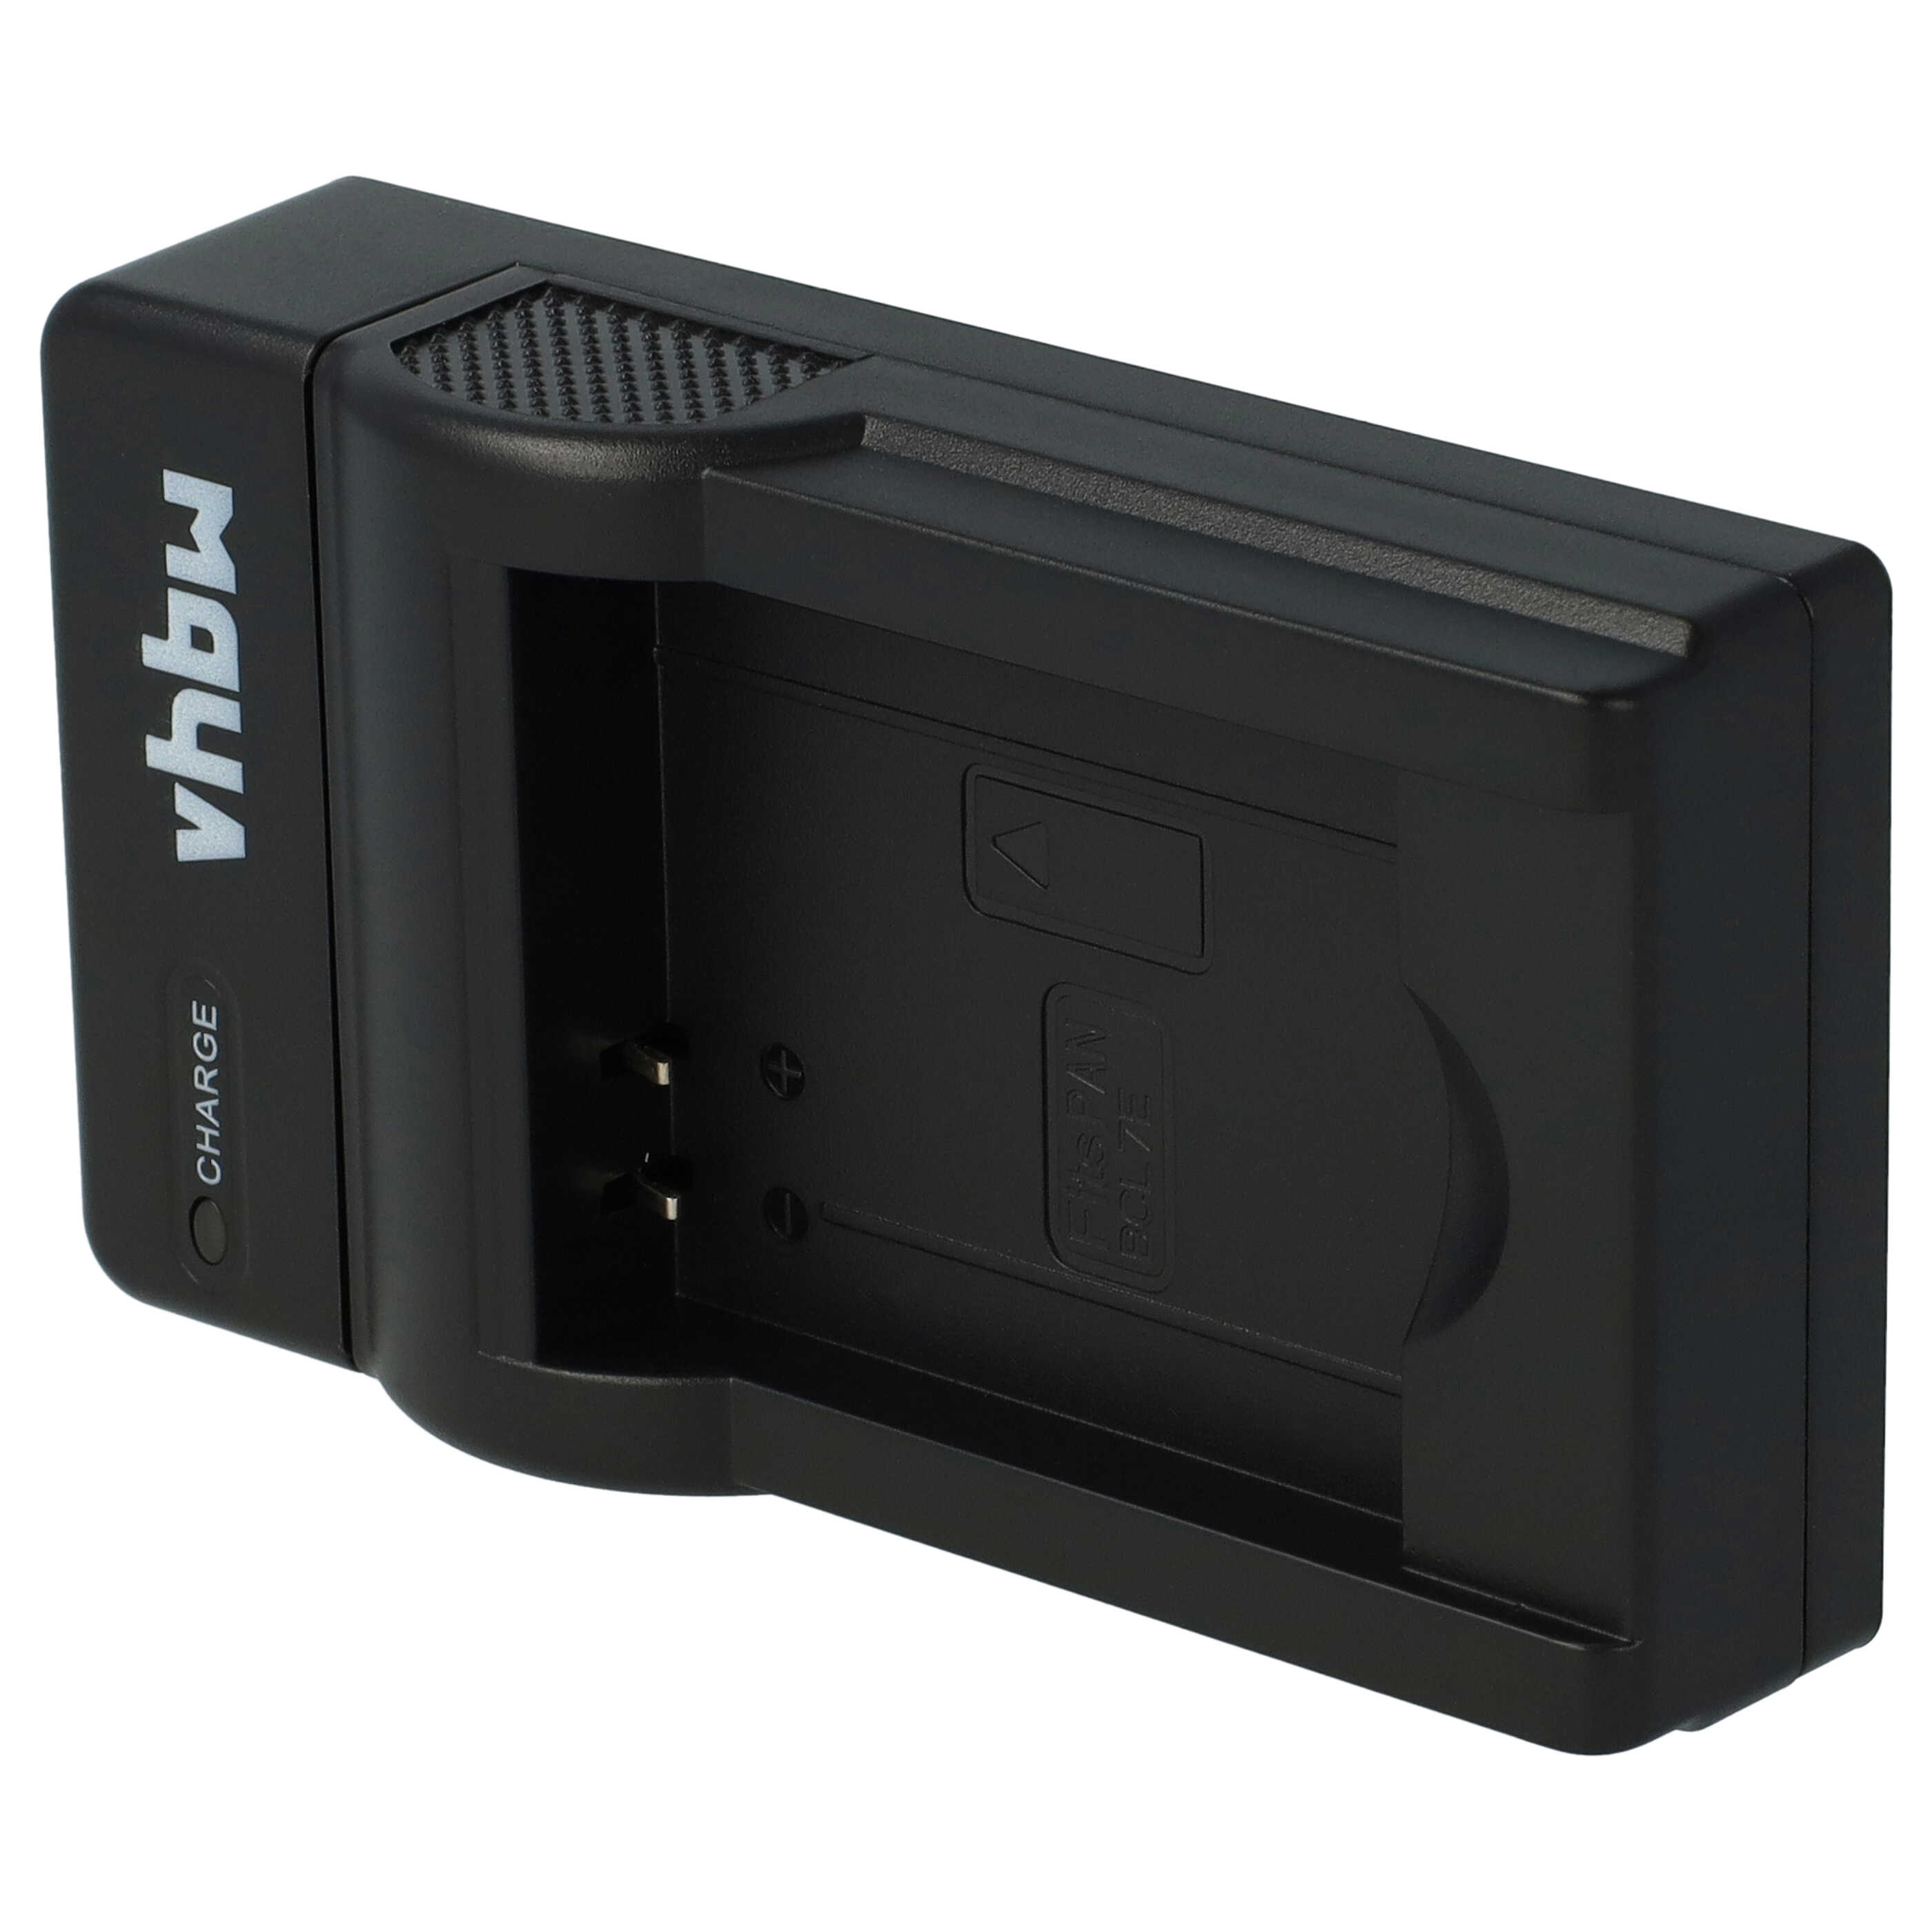 Akku Ladegerät passend für Lumix DMC-F5 Kamera u.a. - 0,5 A, 4,2 V